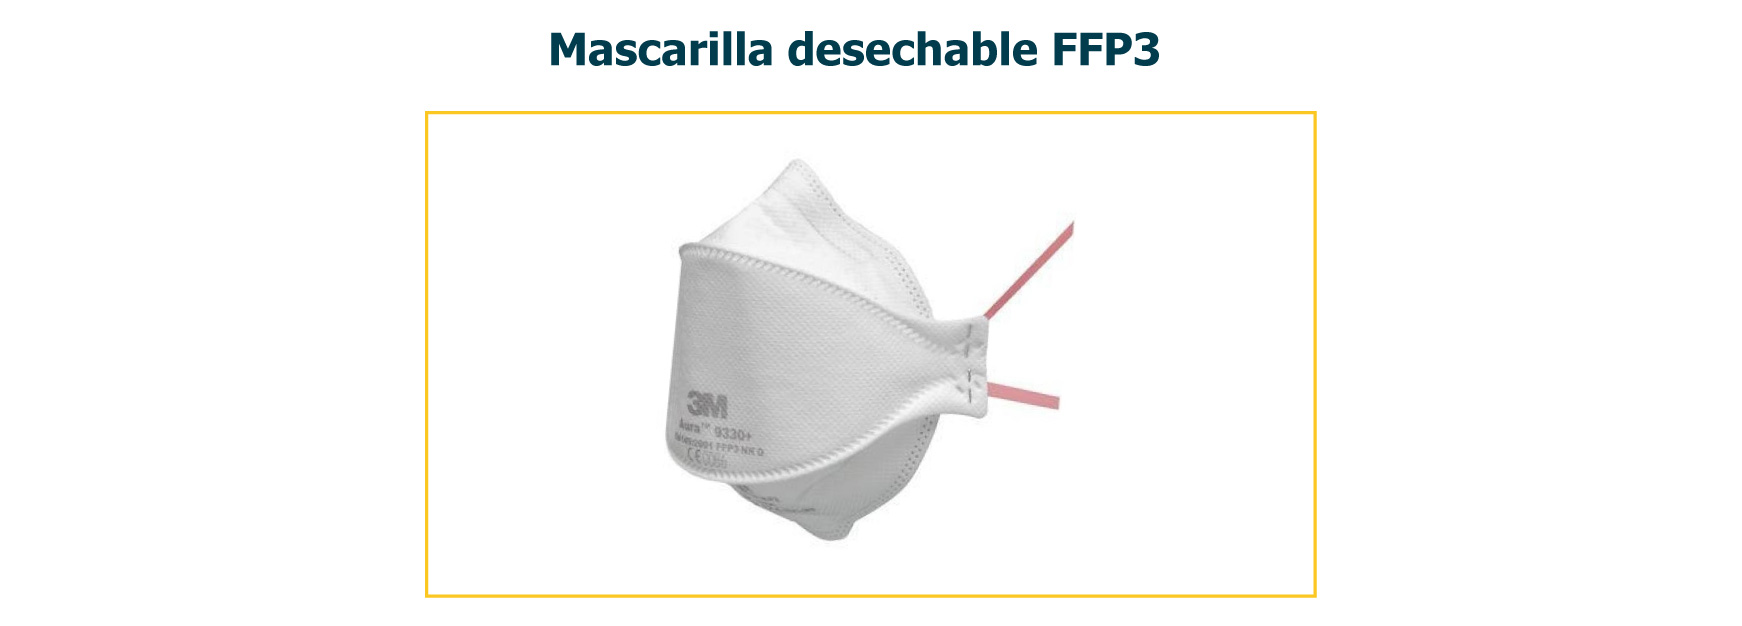 Mascarilla desechable FFP3